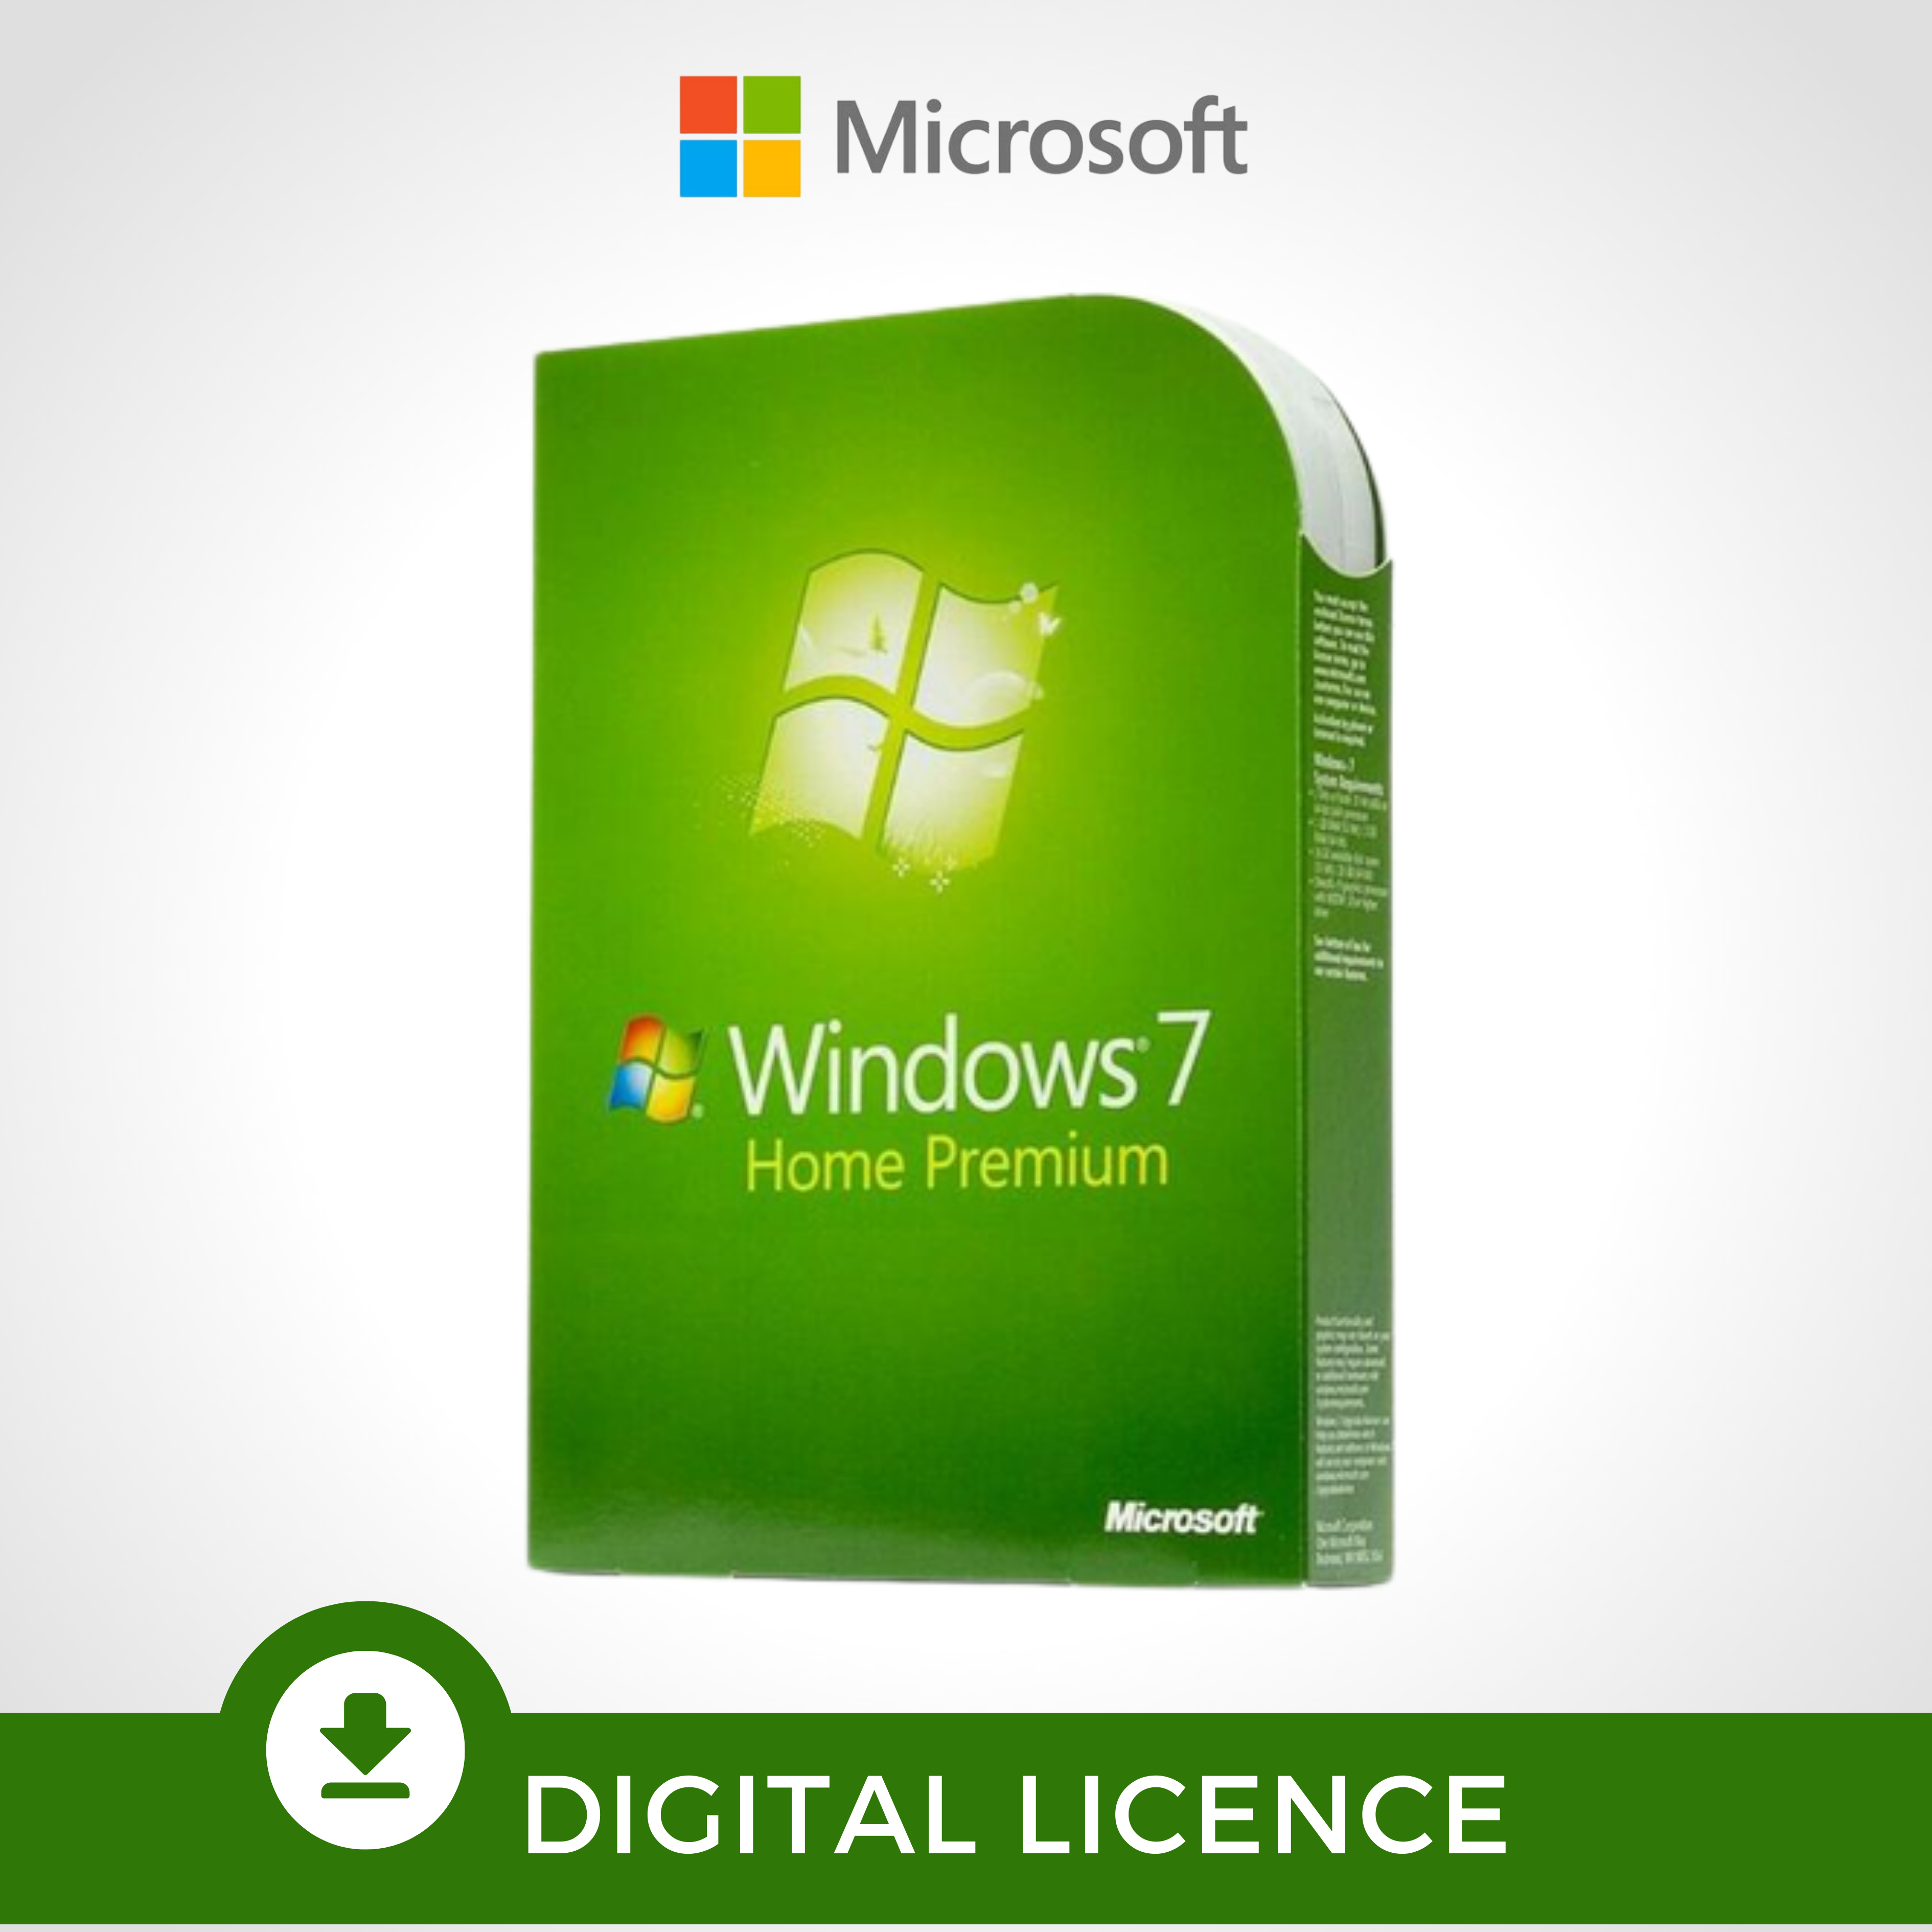 biología episodio De confianza Windows 7 Home Premium Licencia Digital – milicenciamiento.com